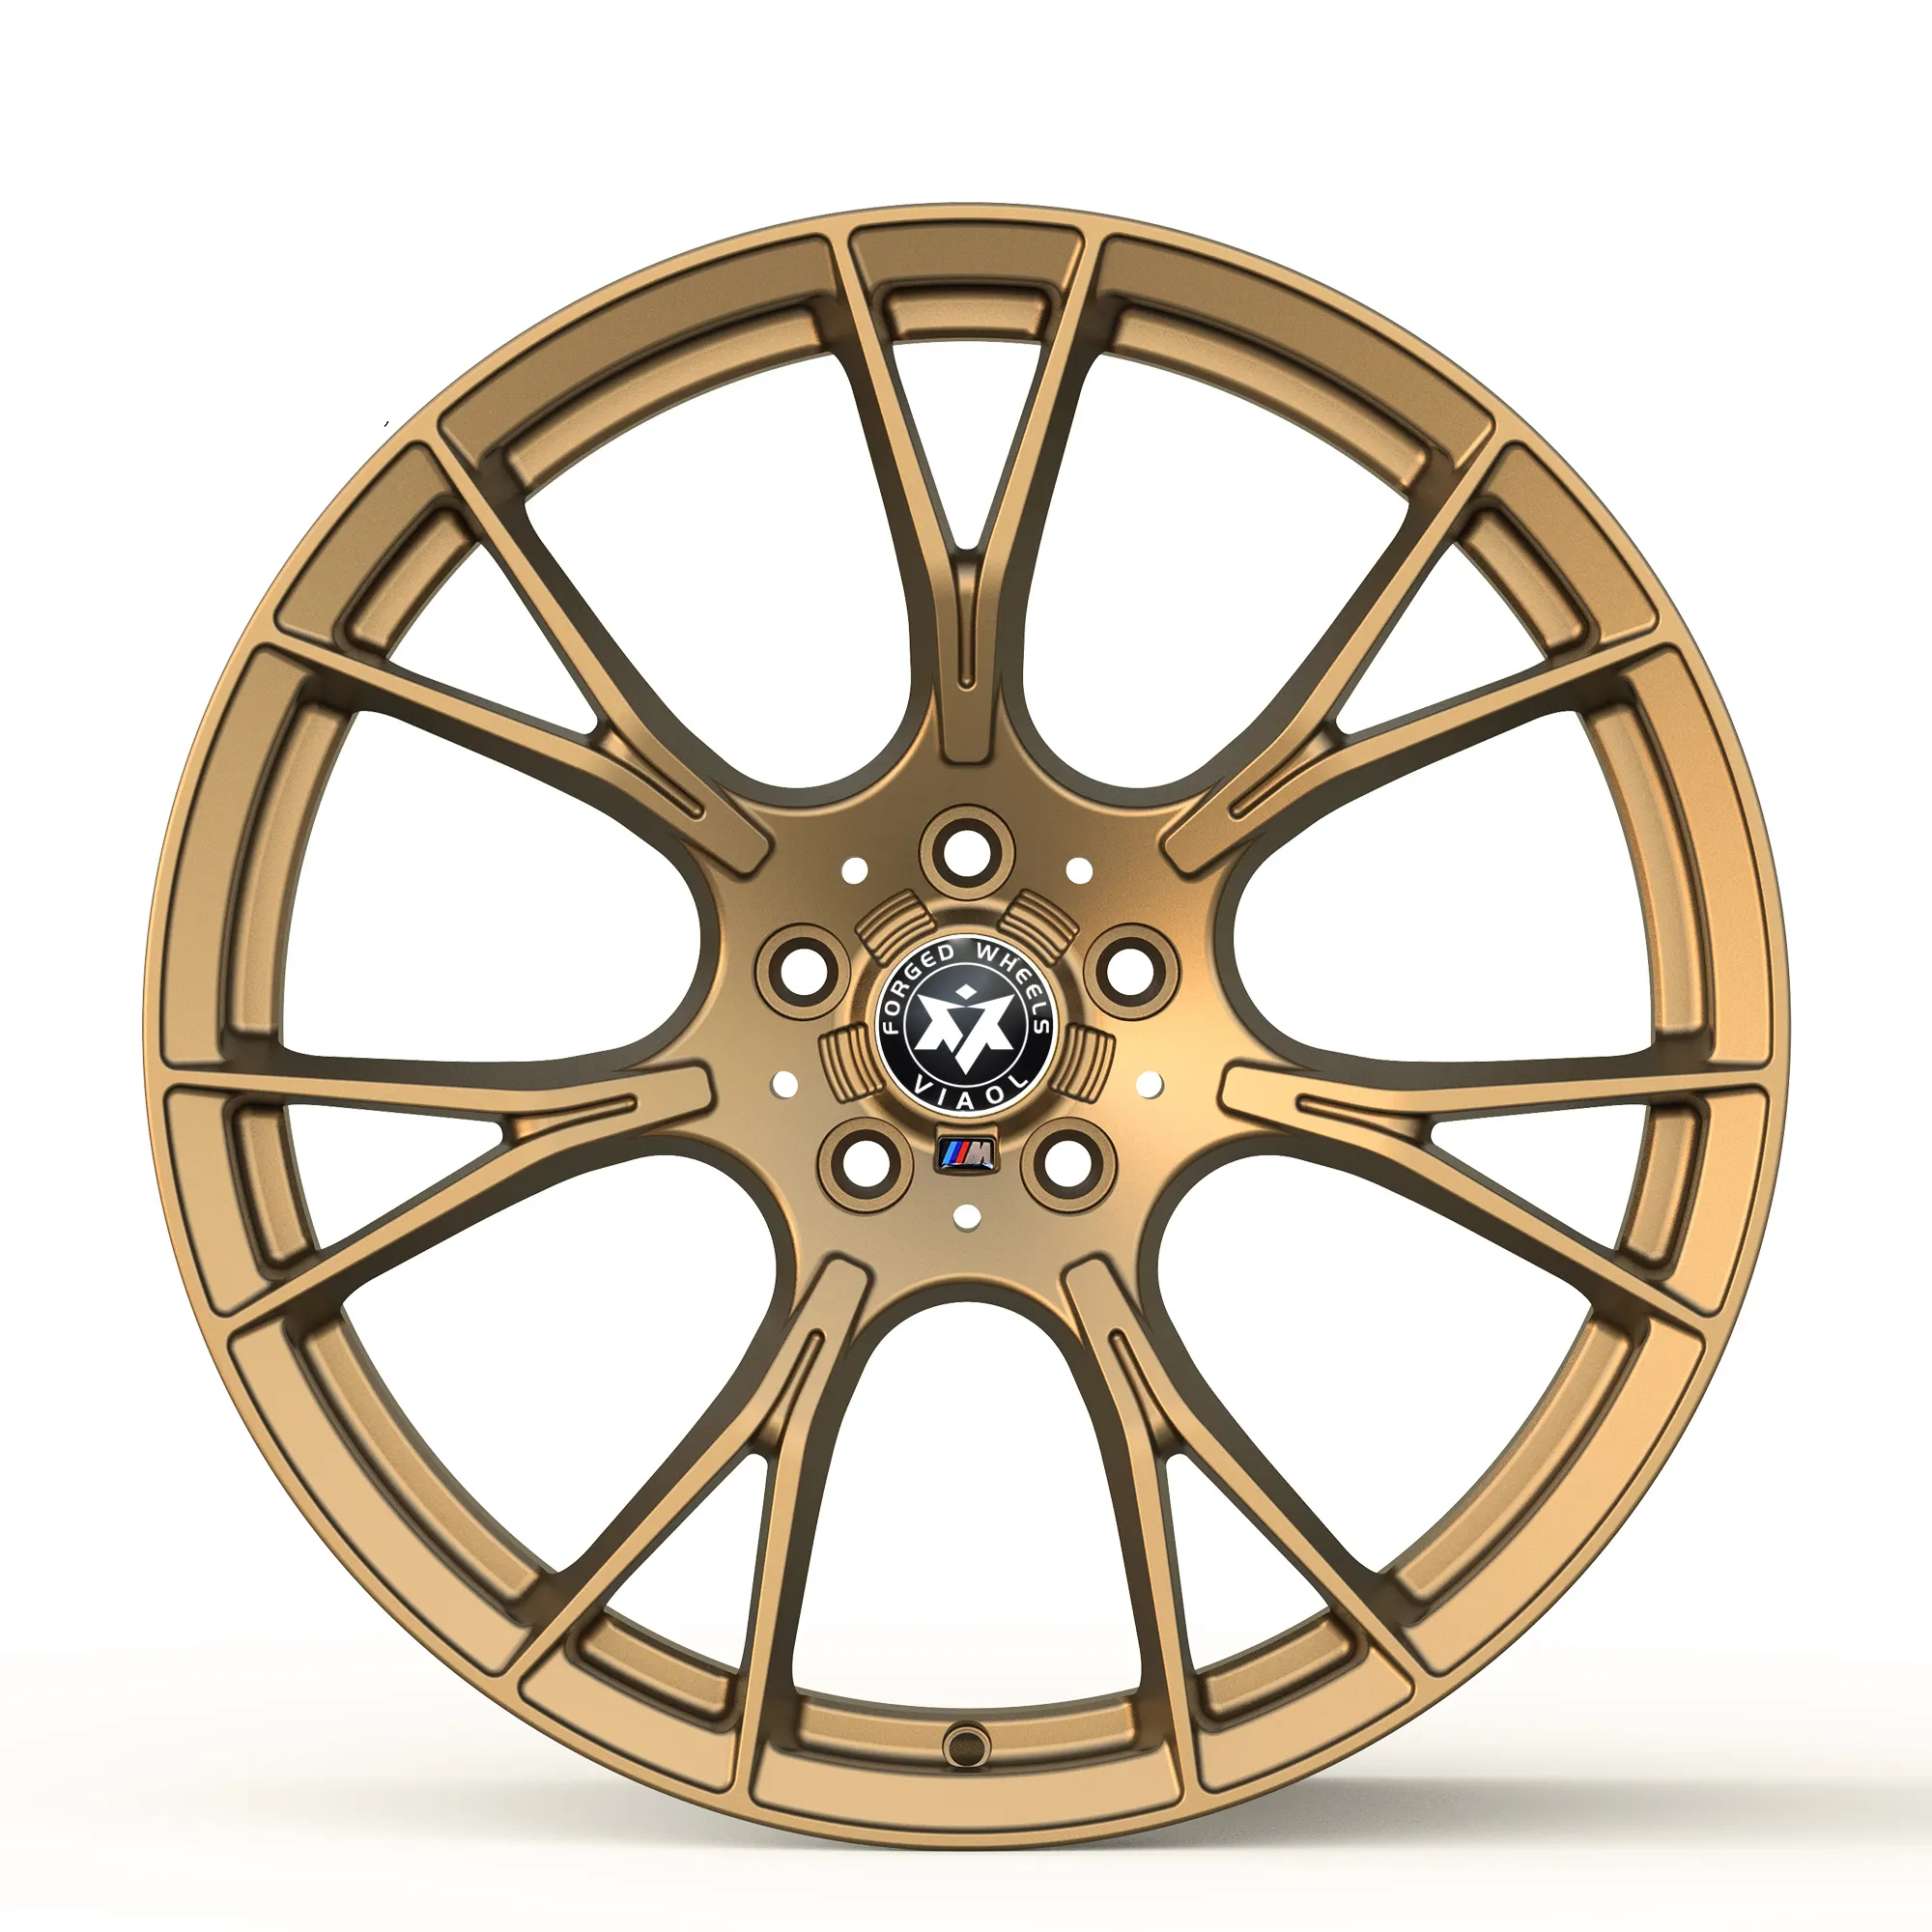 Custom forged wheels for BMW M5 F90 20 inch style 789 M wheels 5x120 rims antique bronze car wheels